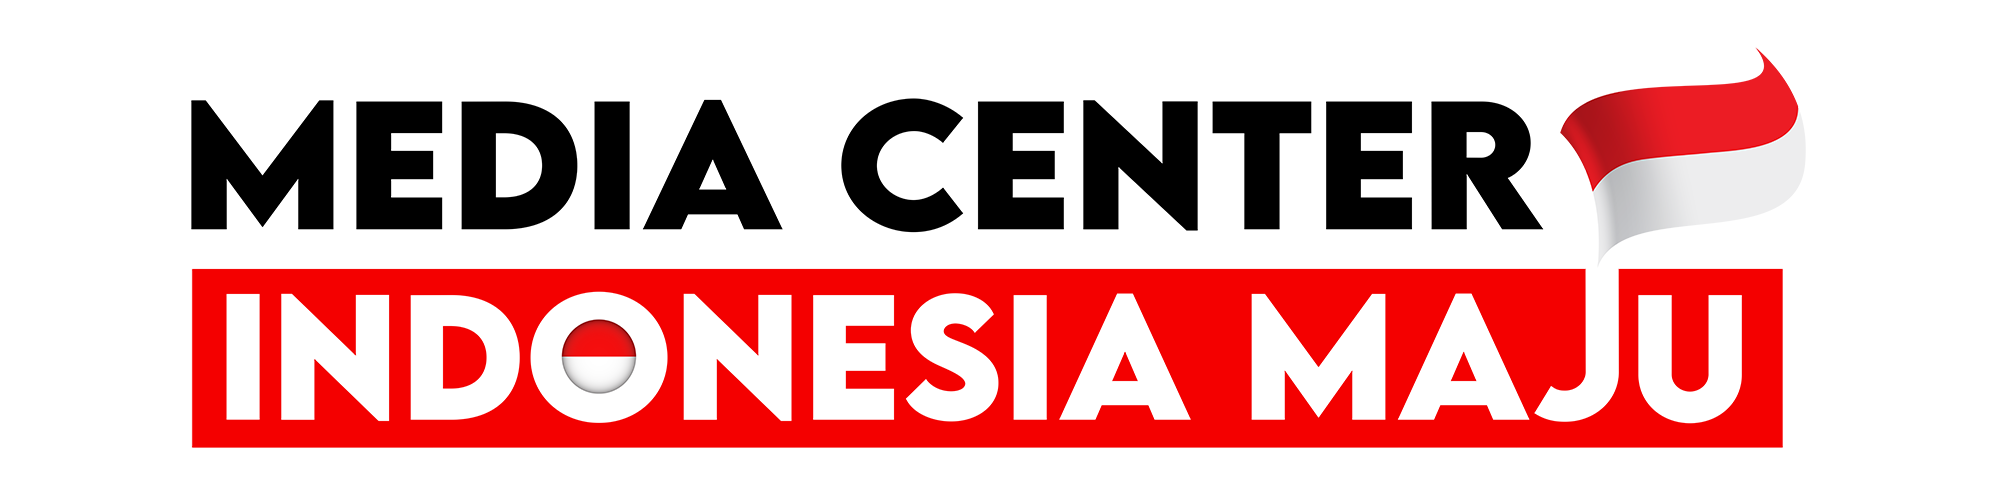 Media Center Indonesia Maju Com